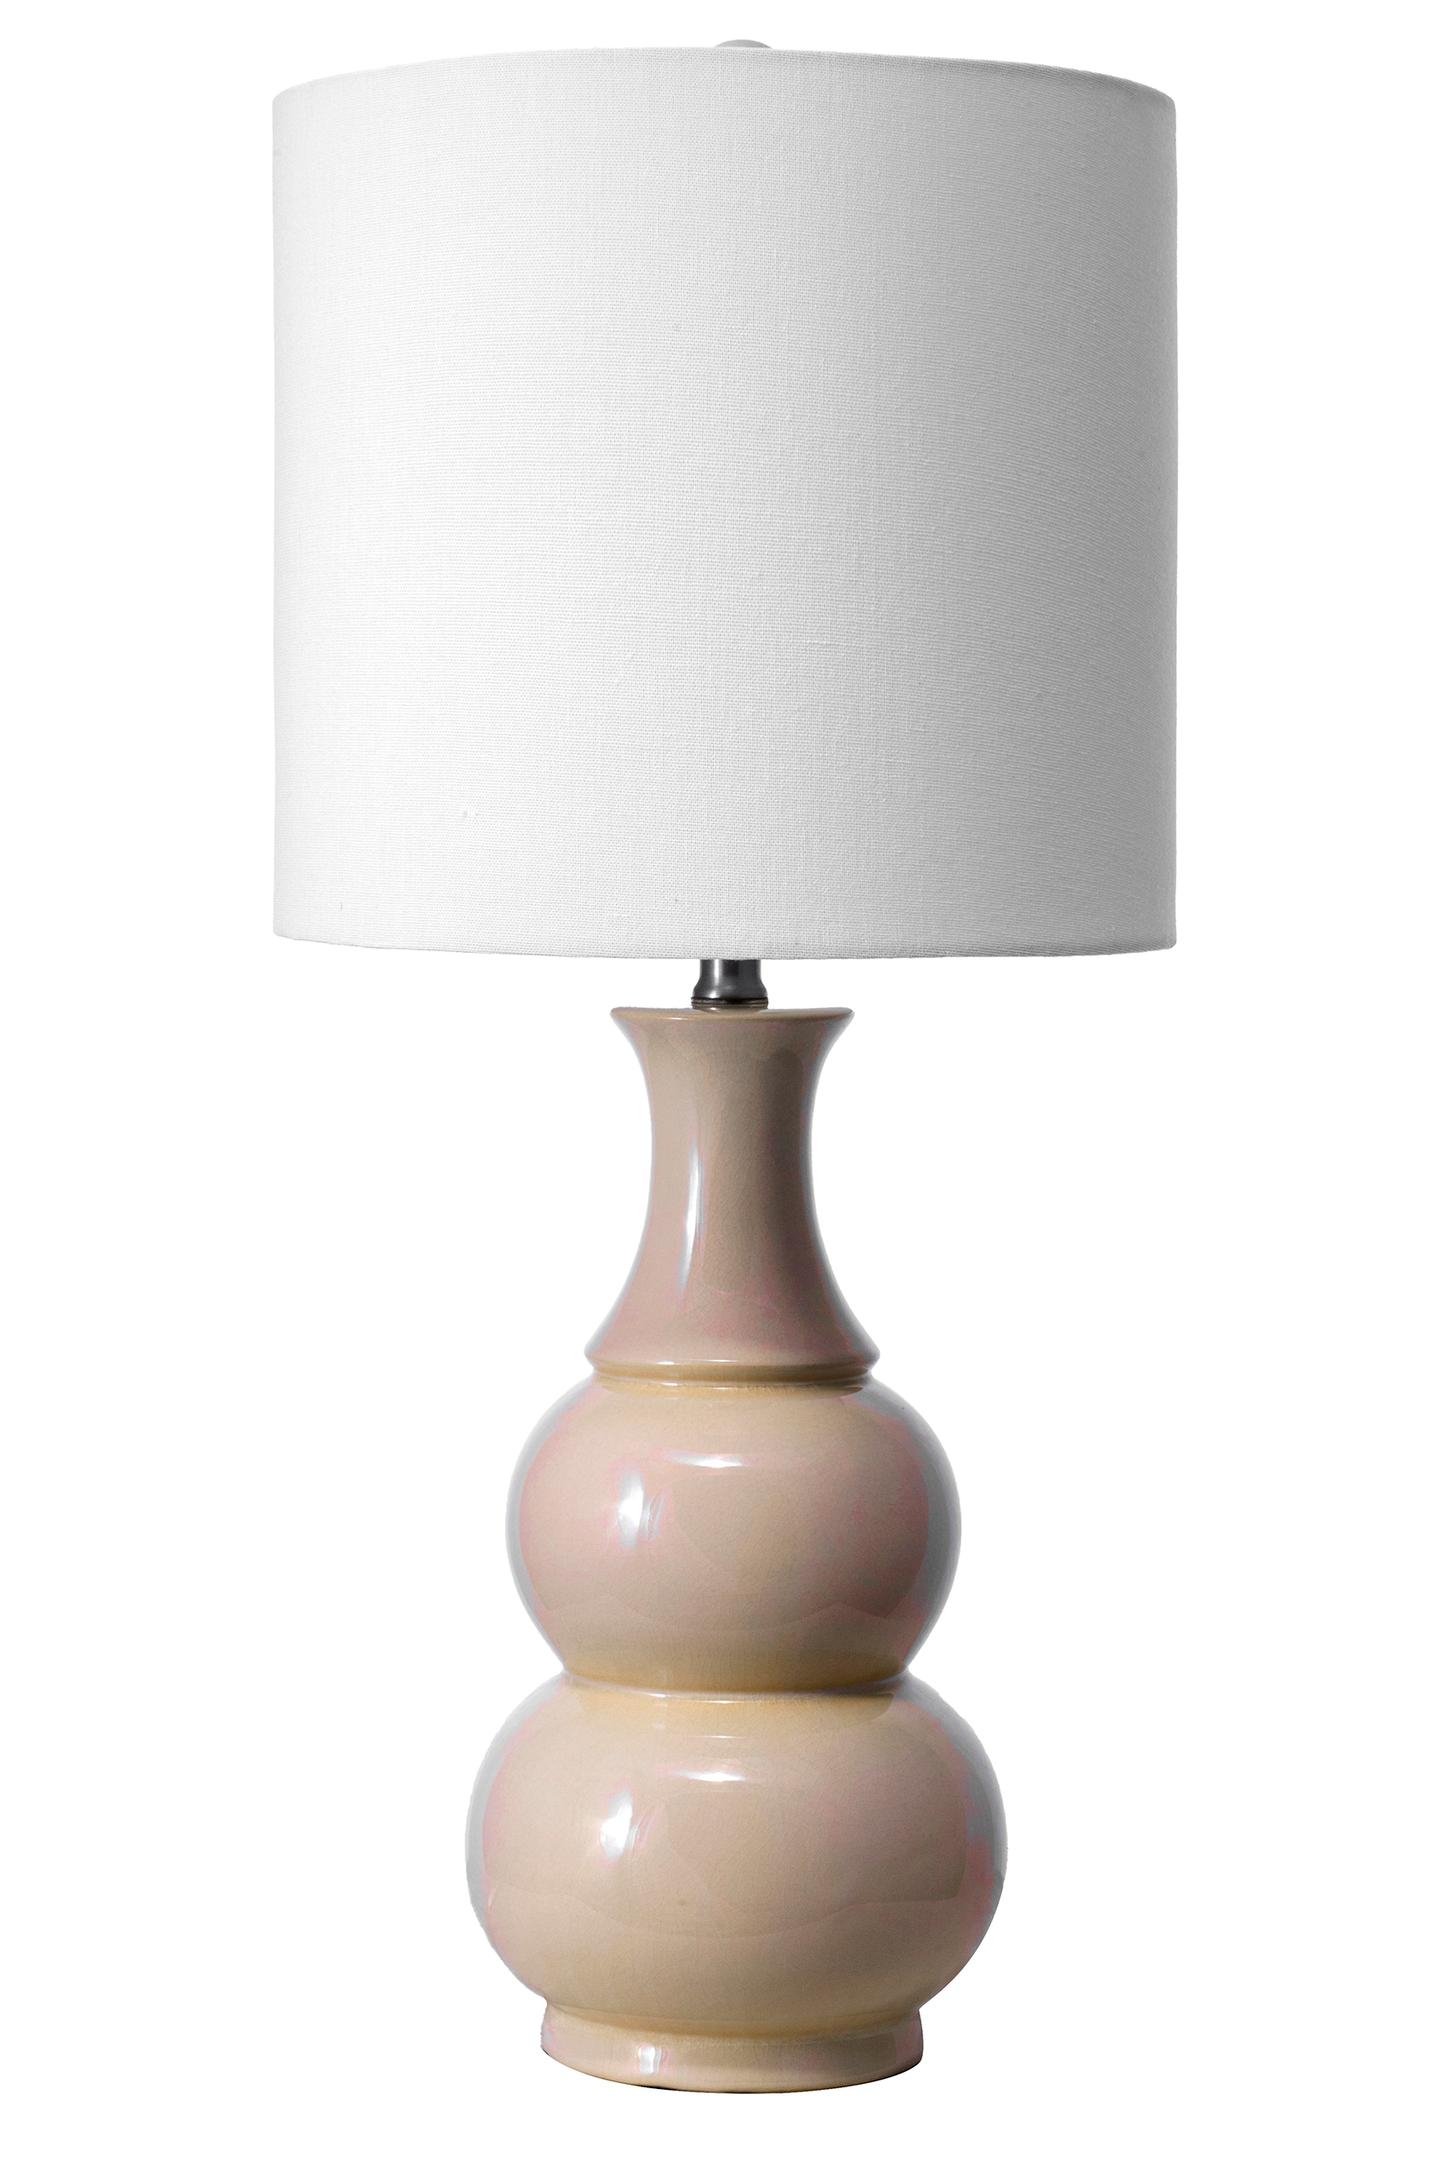  Indio 29" Ceramic Table Lamp - Image 2